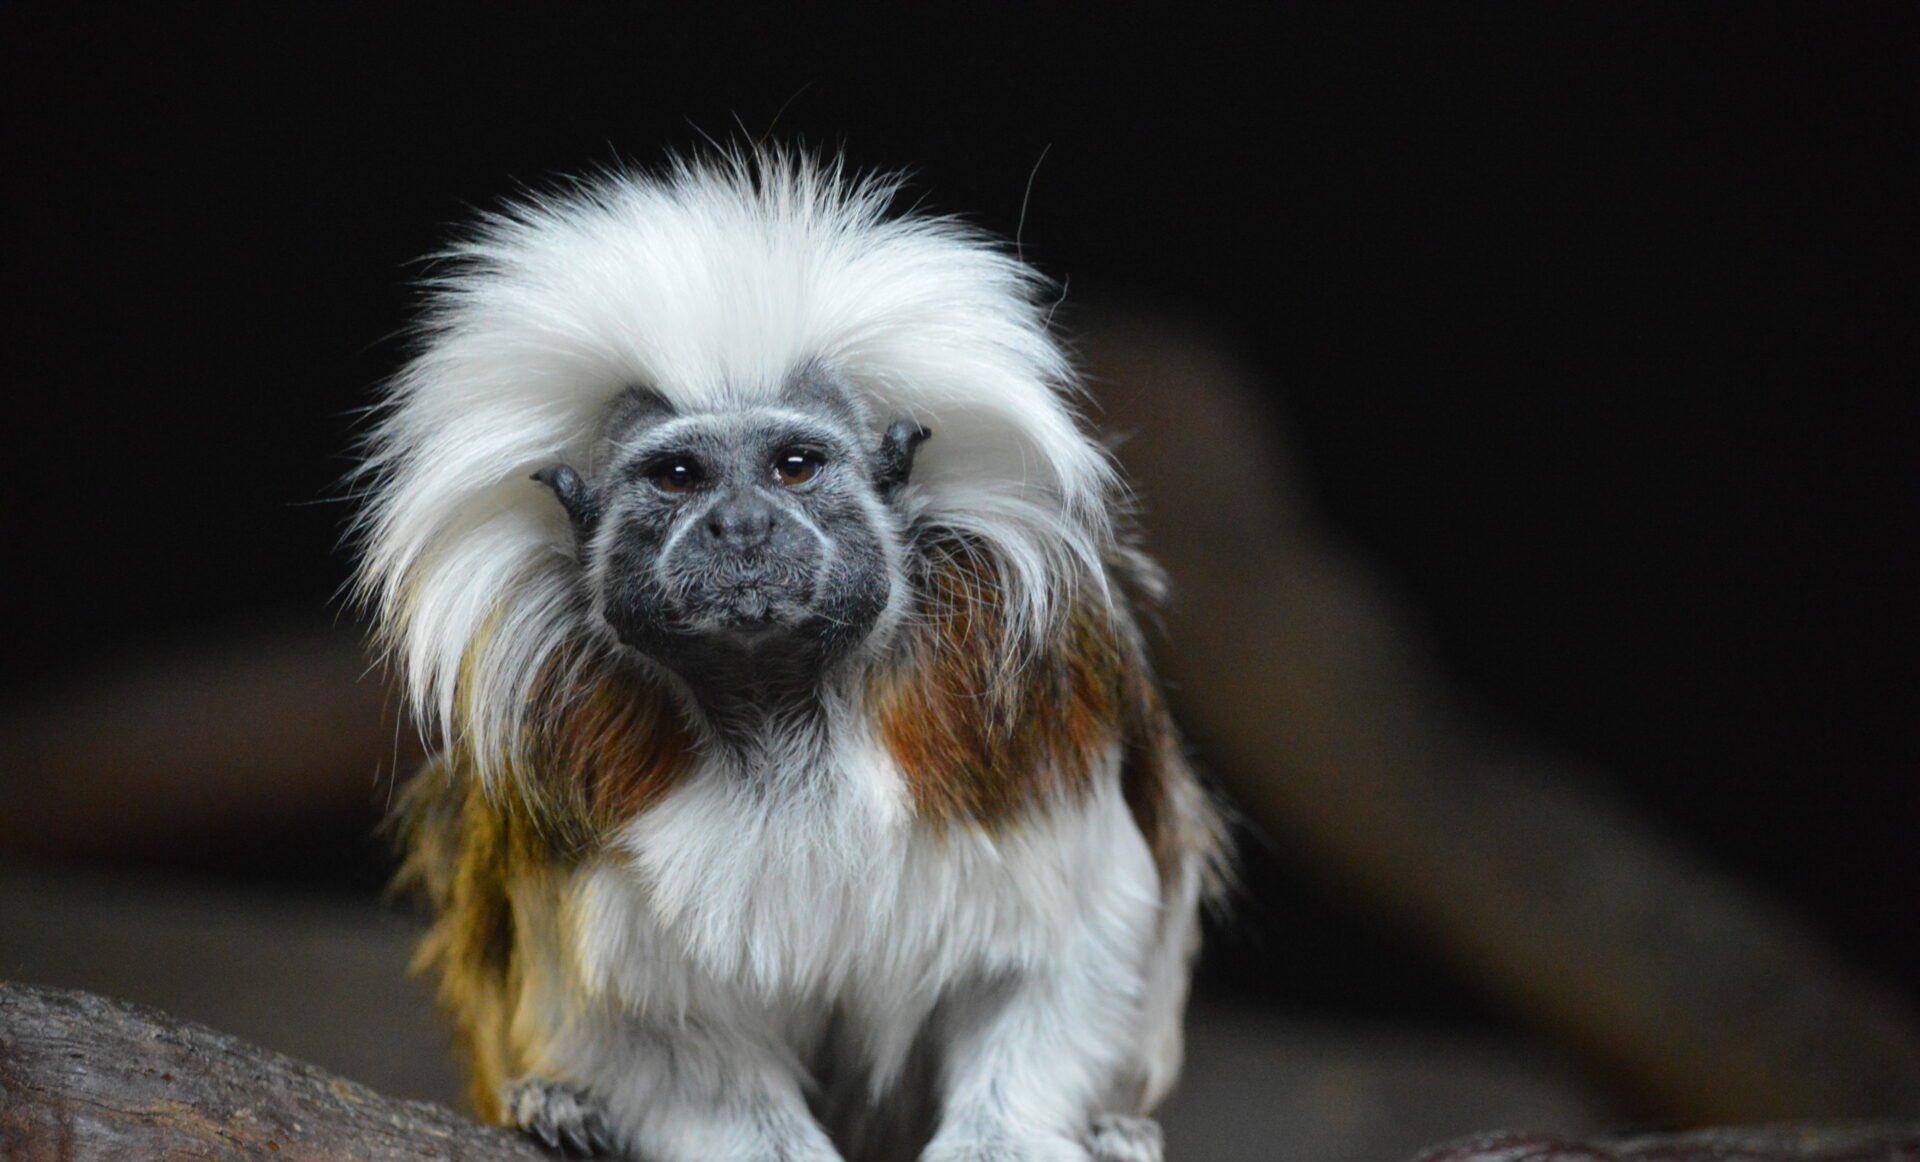 棉顶狨猴,群居但不开后宫,现在成了世界上最濒危的灵长类之一